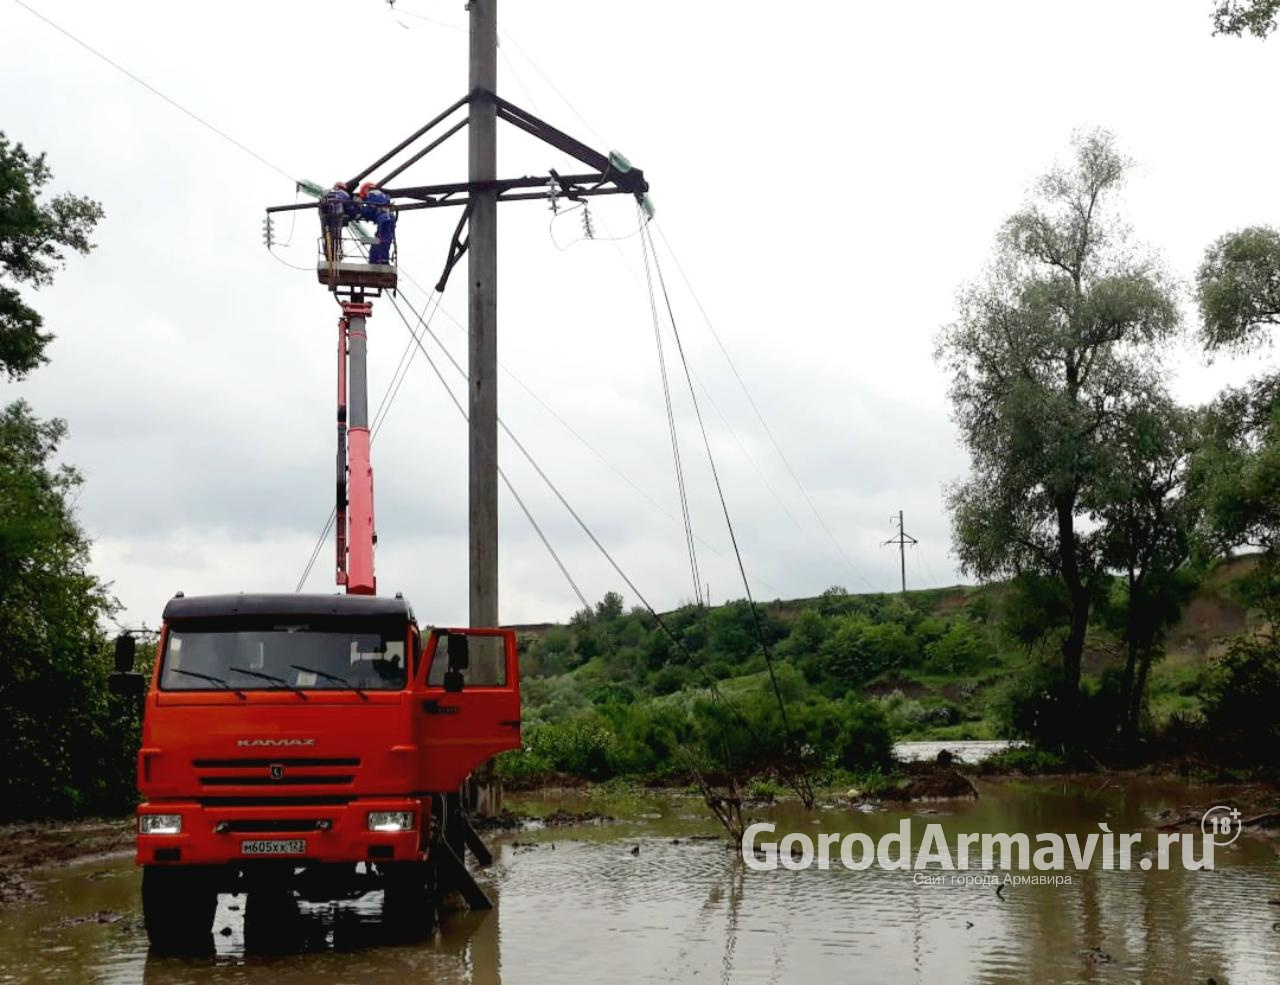 Энергетики перенесли опору ЛЭП для защиты от паводка в Успенском районе